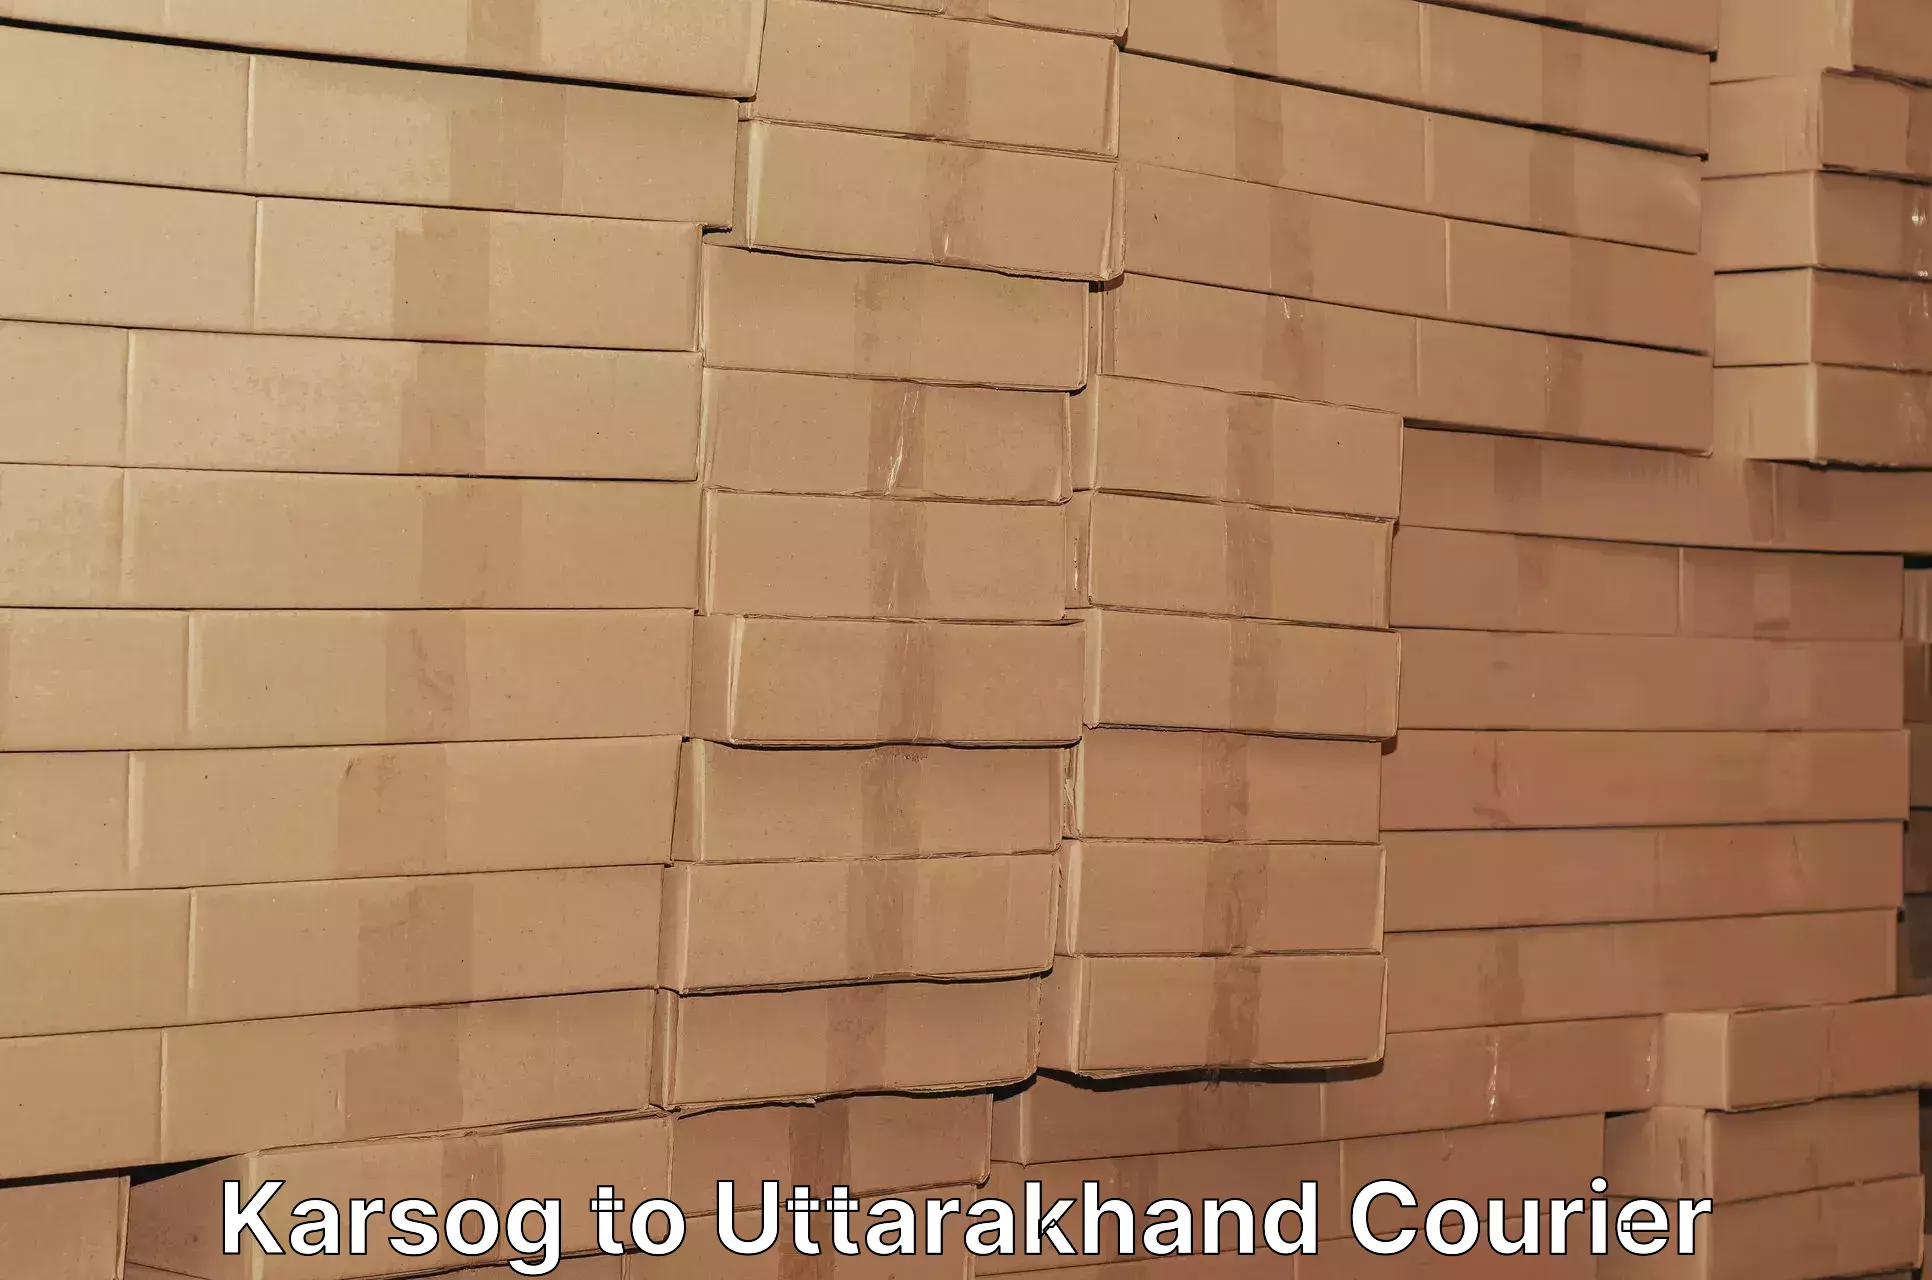 High value parcel delivery Karsog to Dehradun